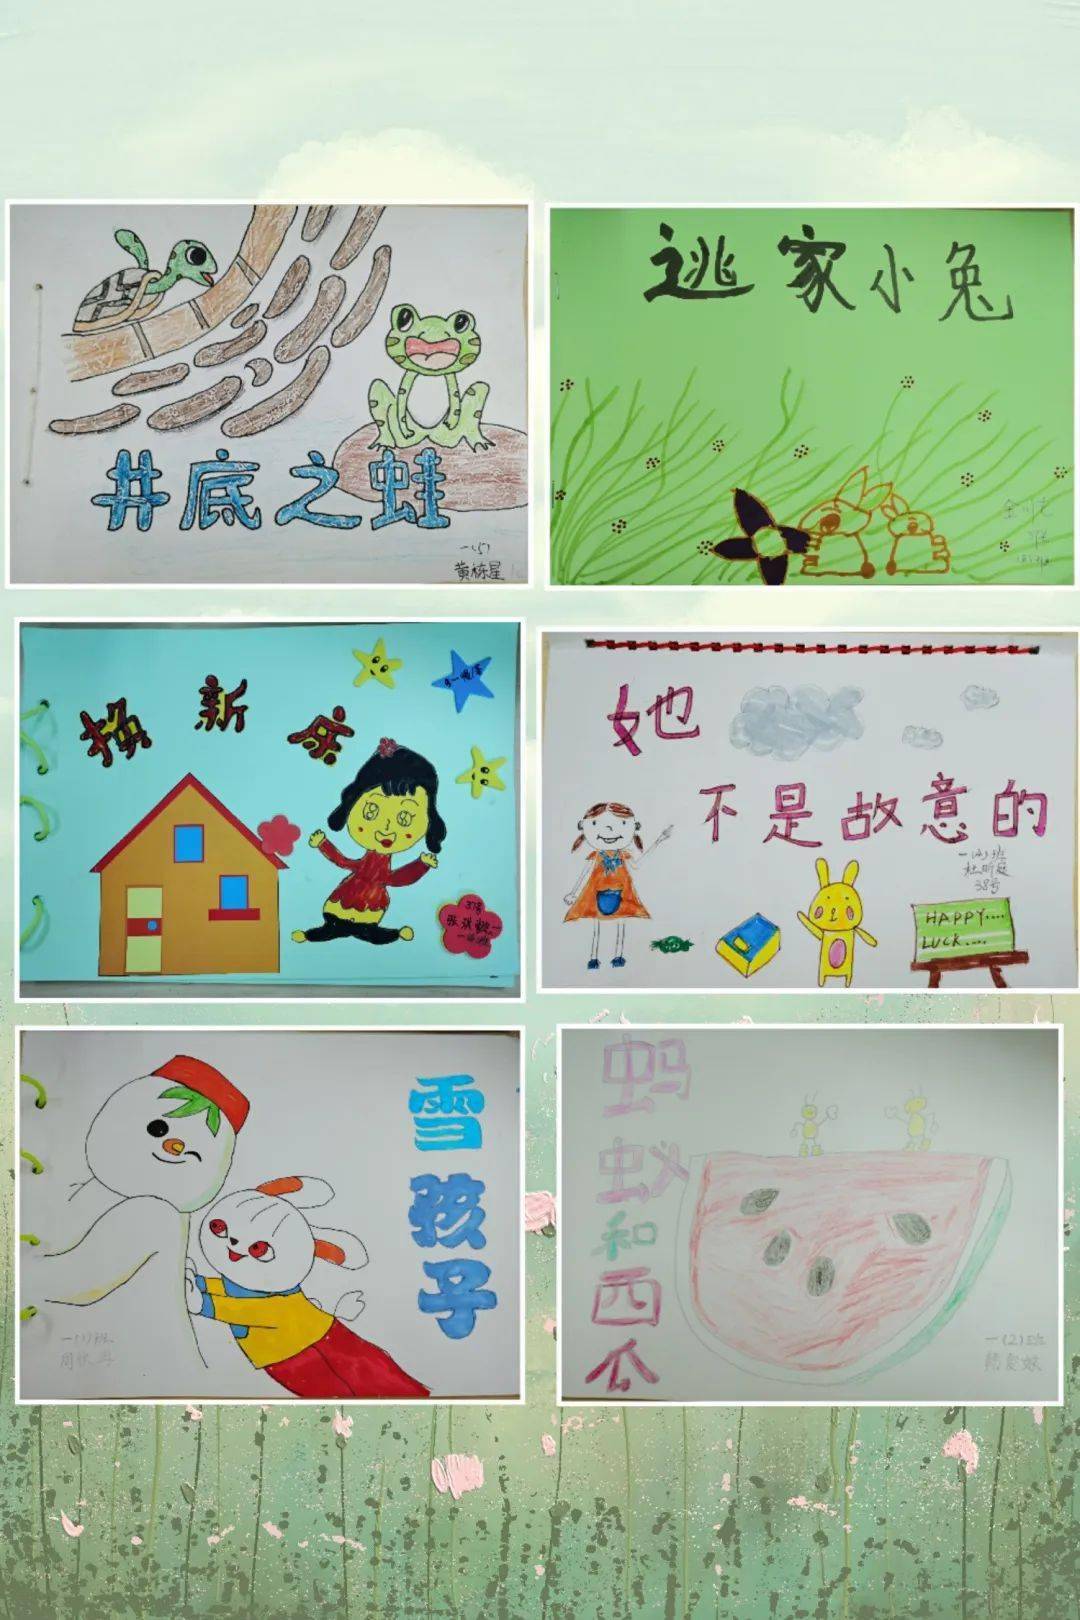 孩子们被绘本的故事吸引,兴致勃勃地和家长亲手画绘本故事,制作出引